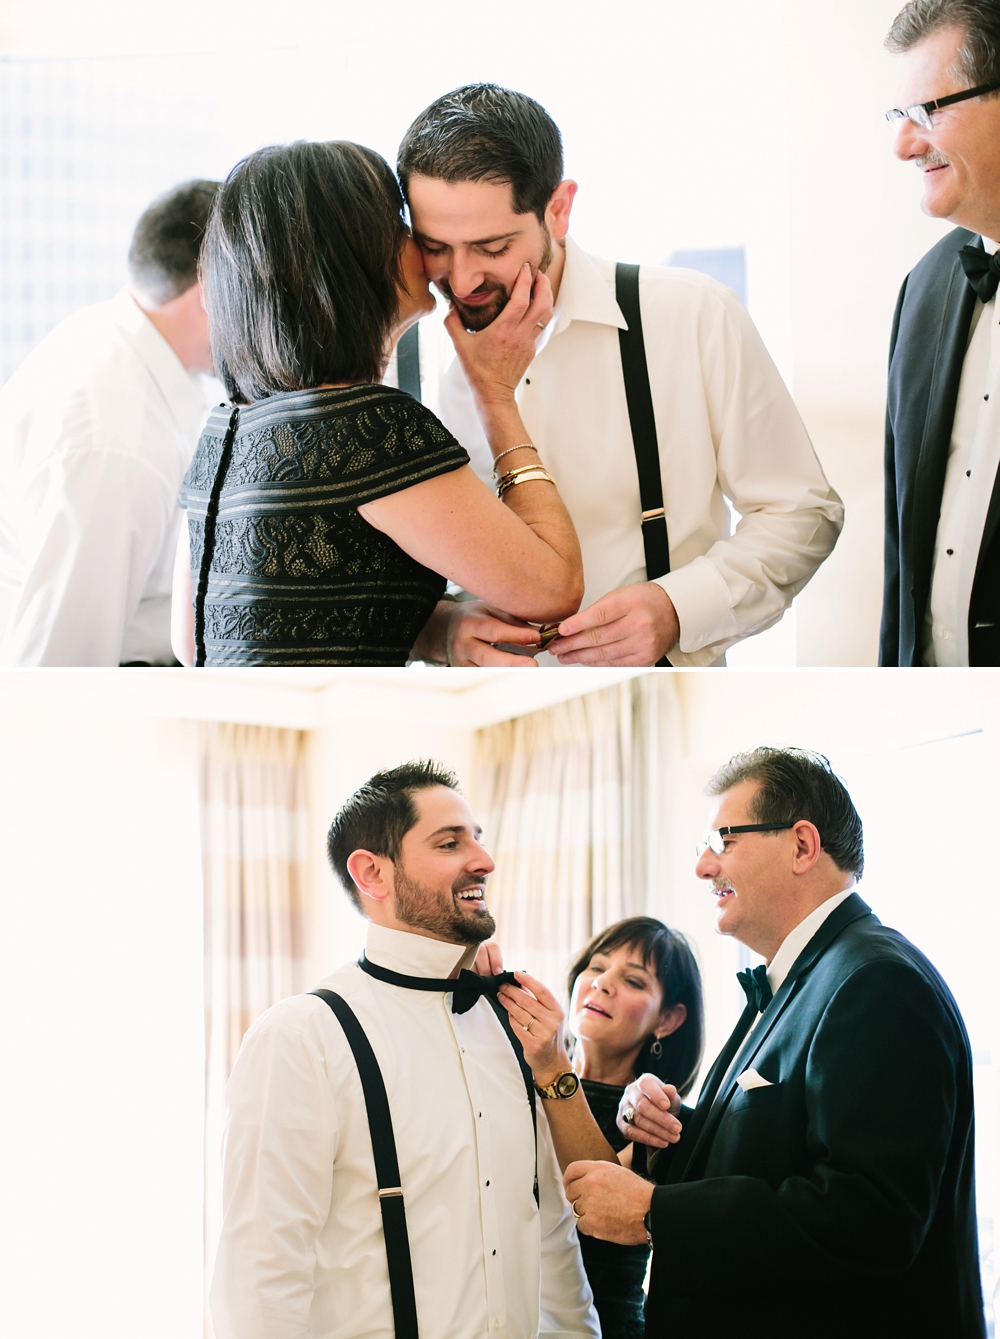 The Ritz-Carlton Cleveland Wedding Photos